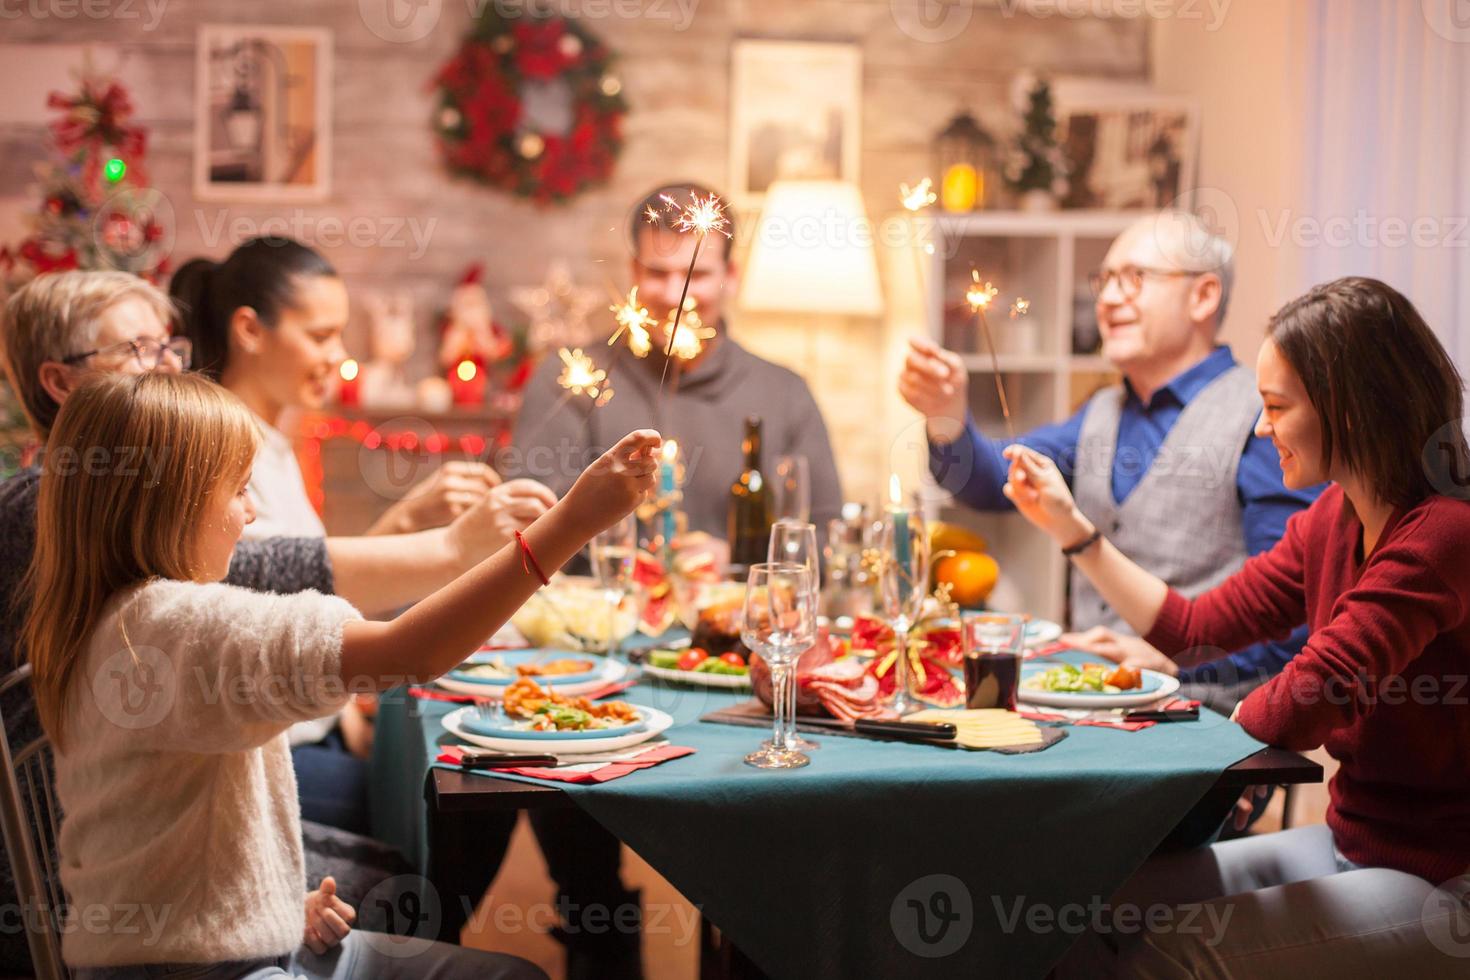 allegro uomo anziano alla cena di Natale in famiglia foto